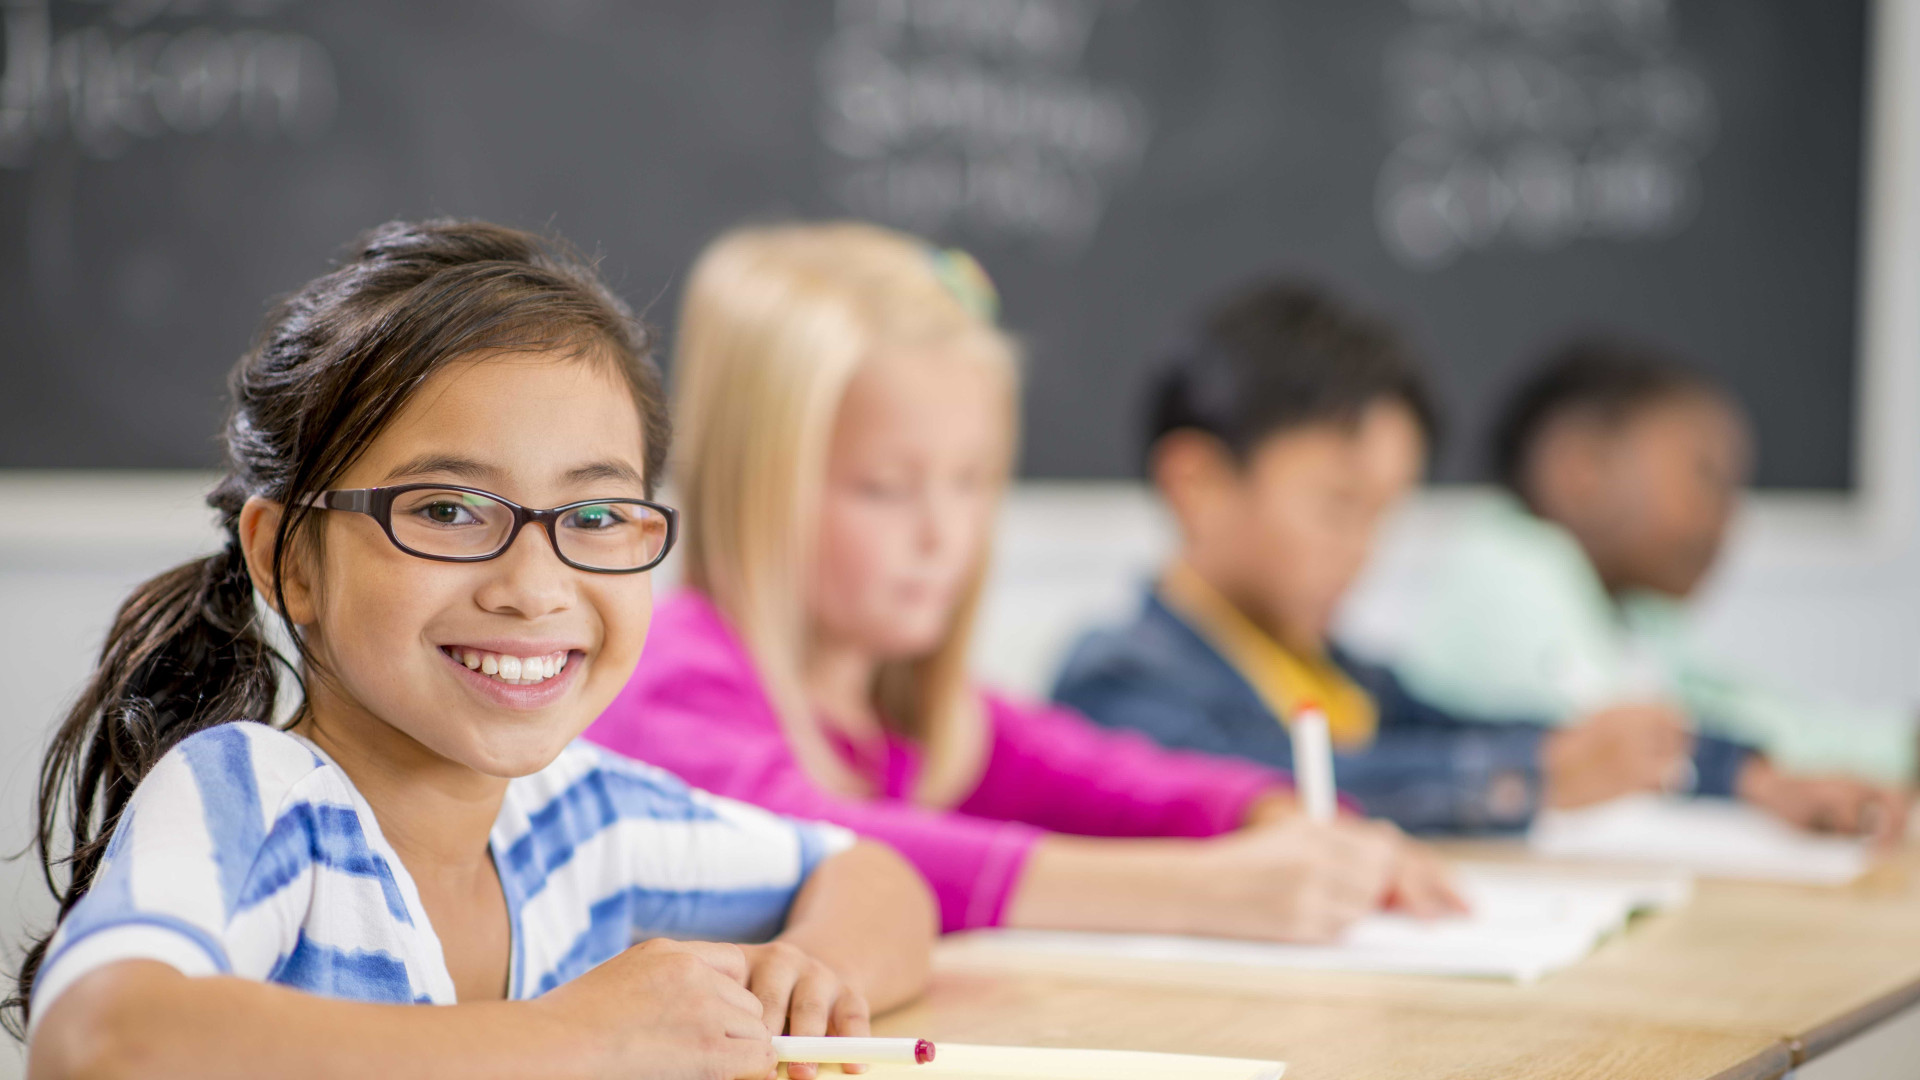 CBO: 30% das crianças em idade escolar possui
algum problema de visão 